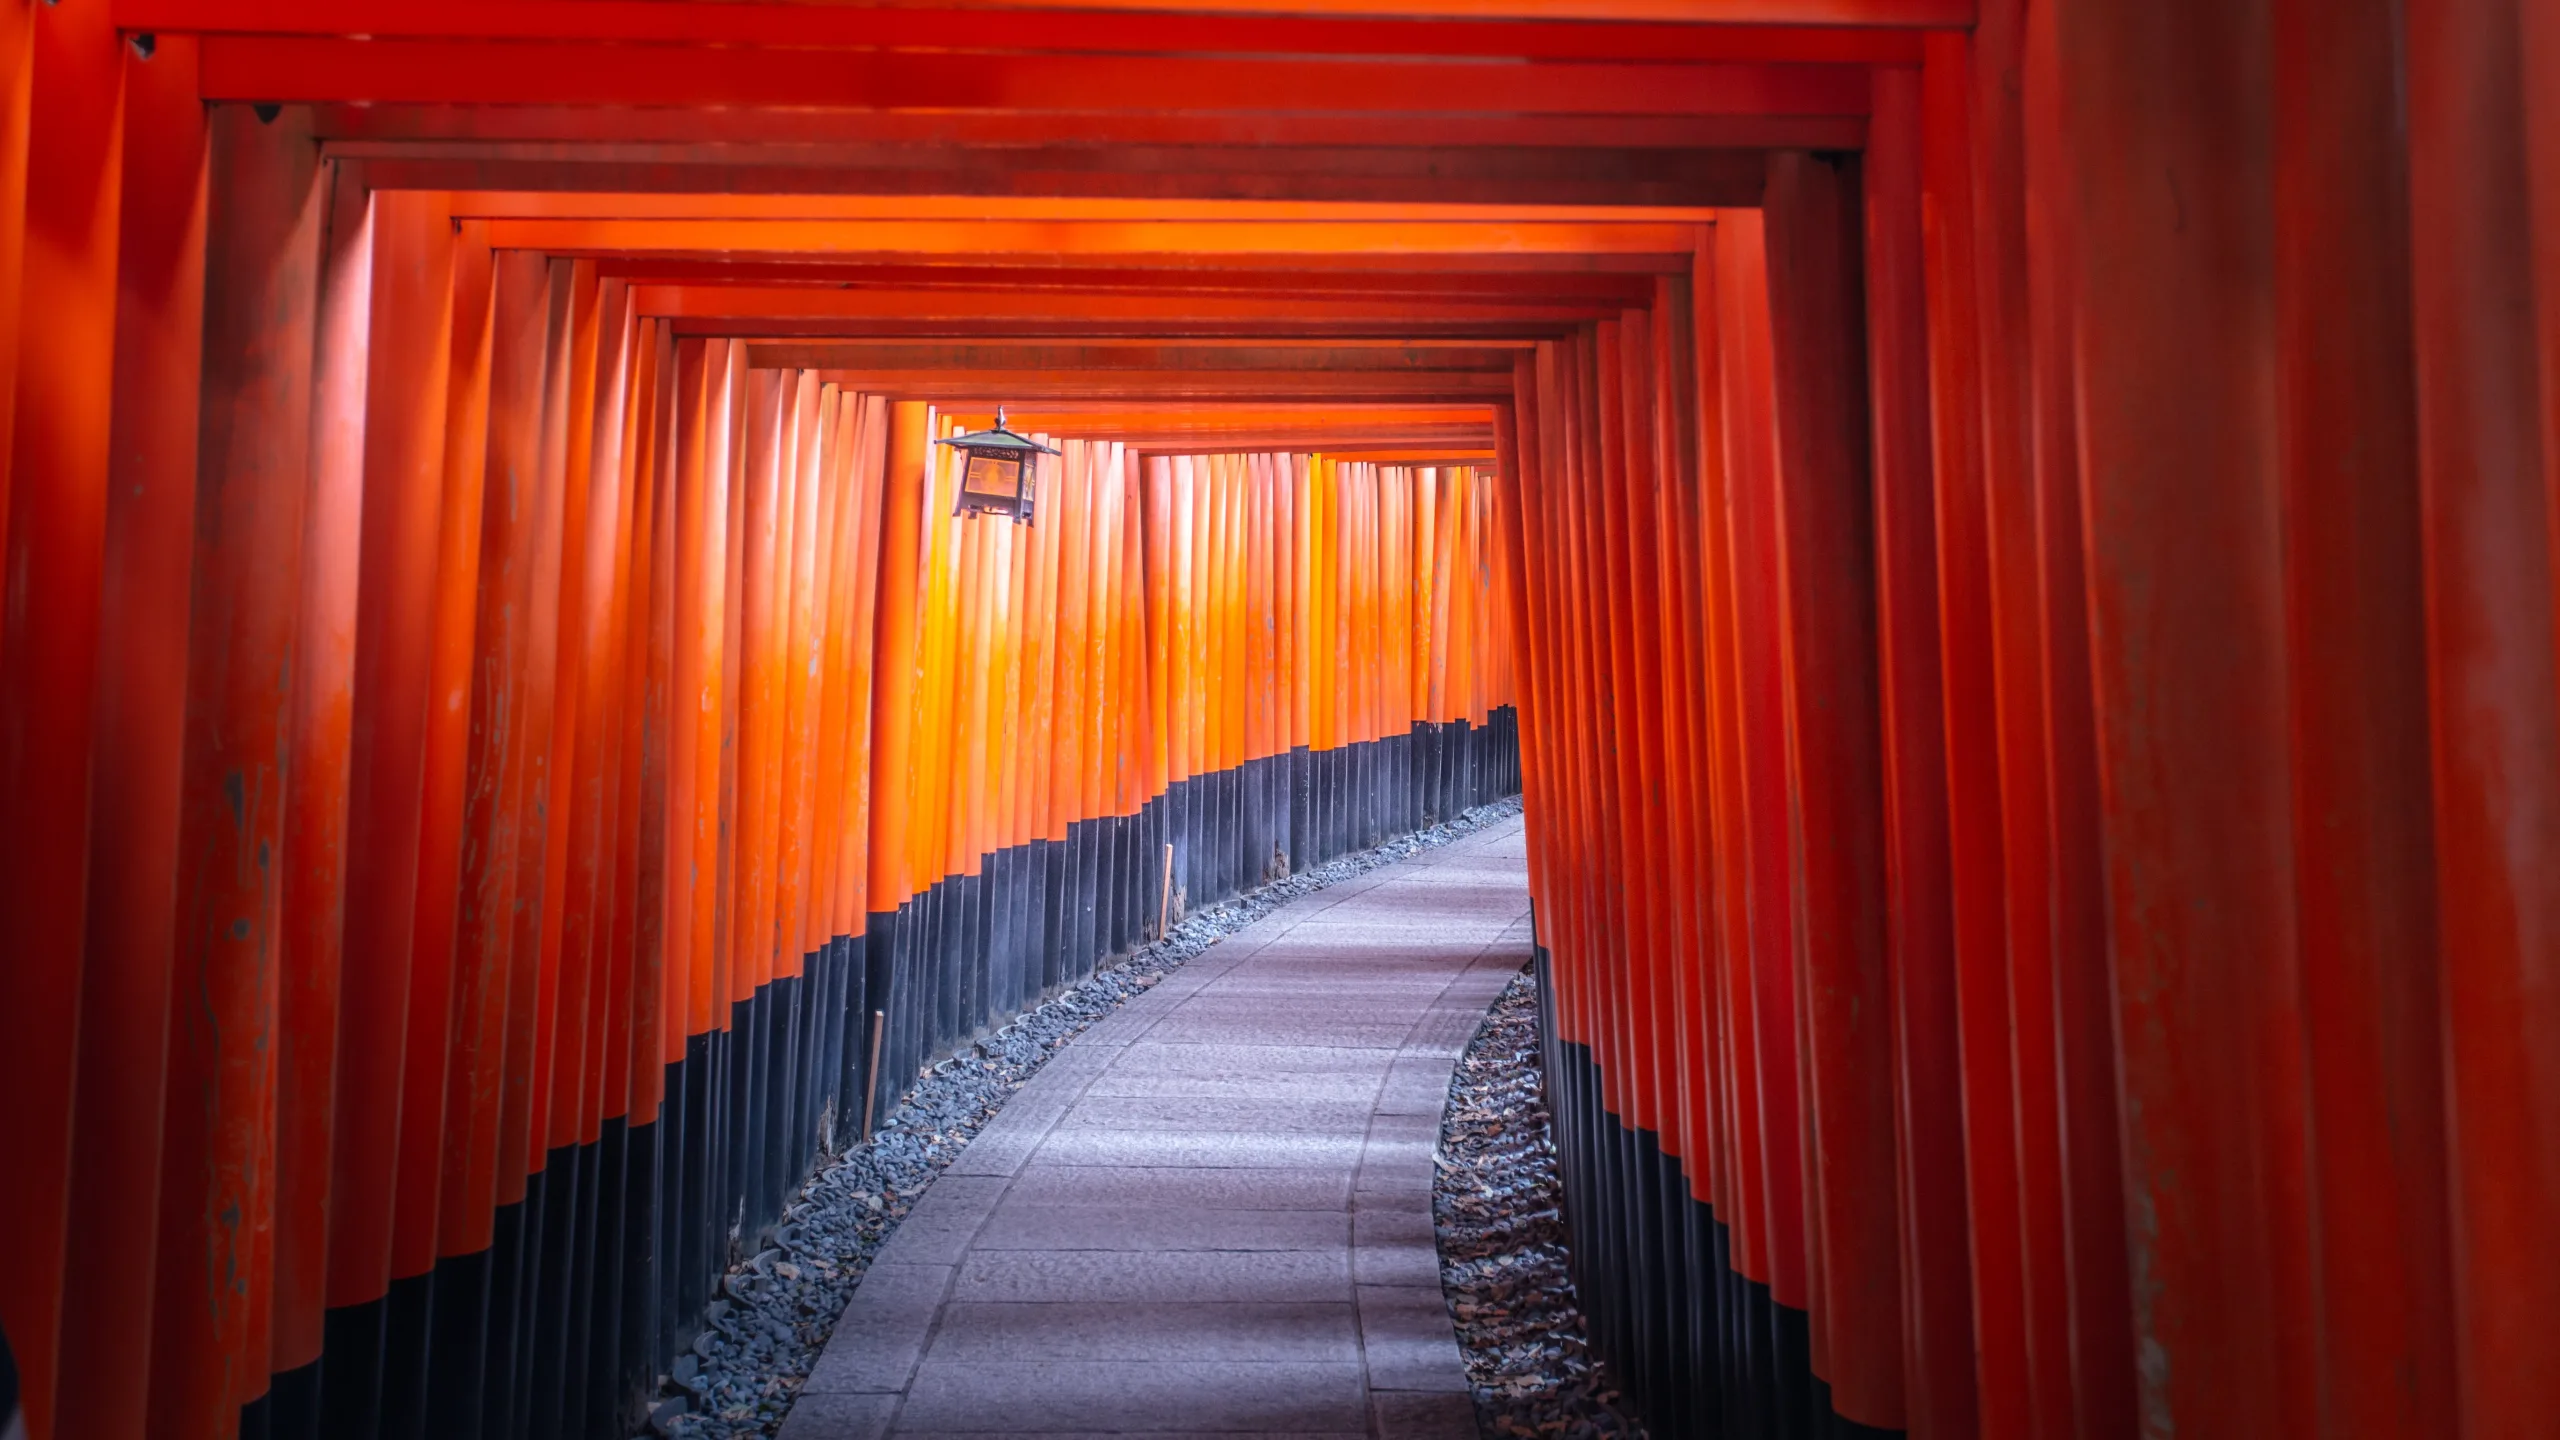 viaje a kioto explorandodestinos.com